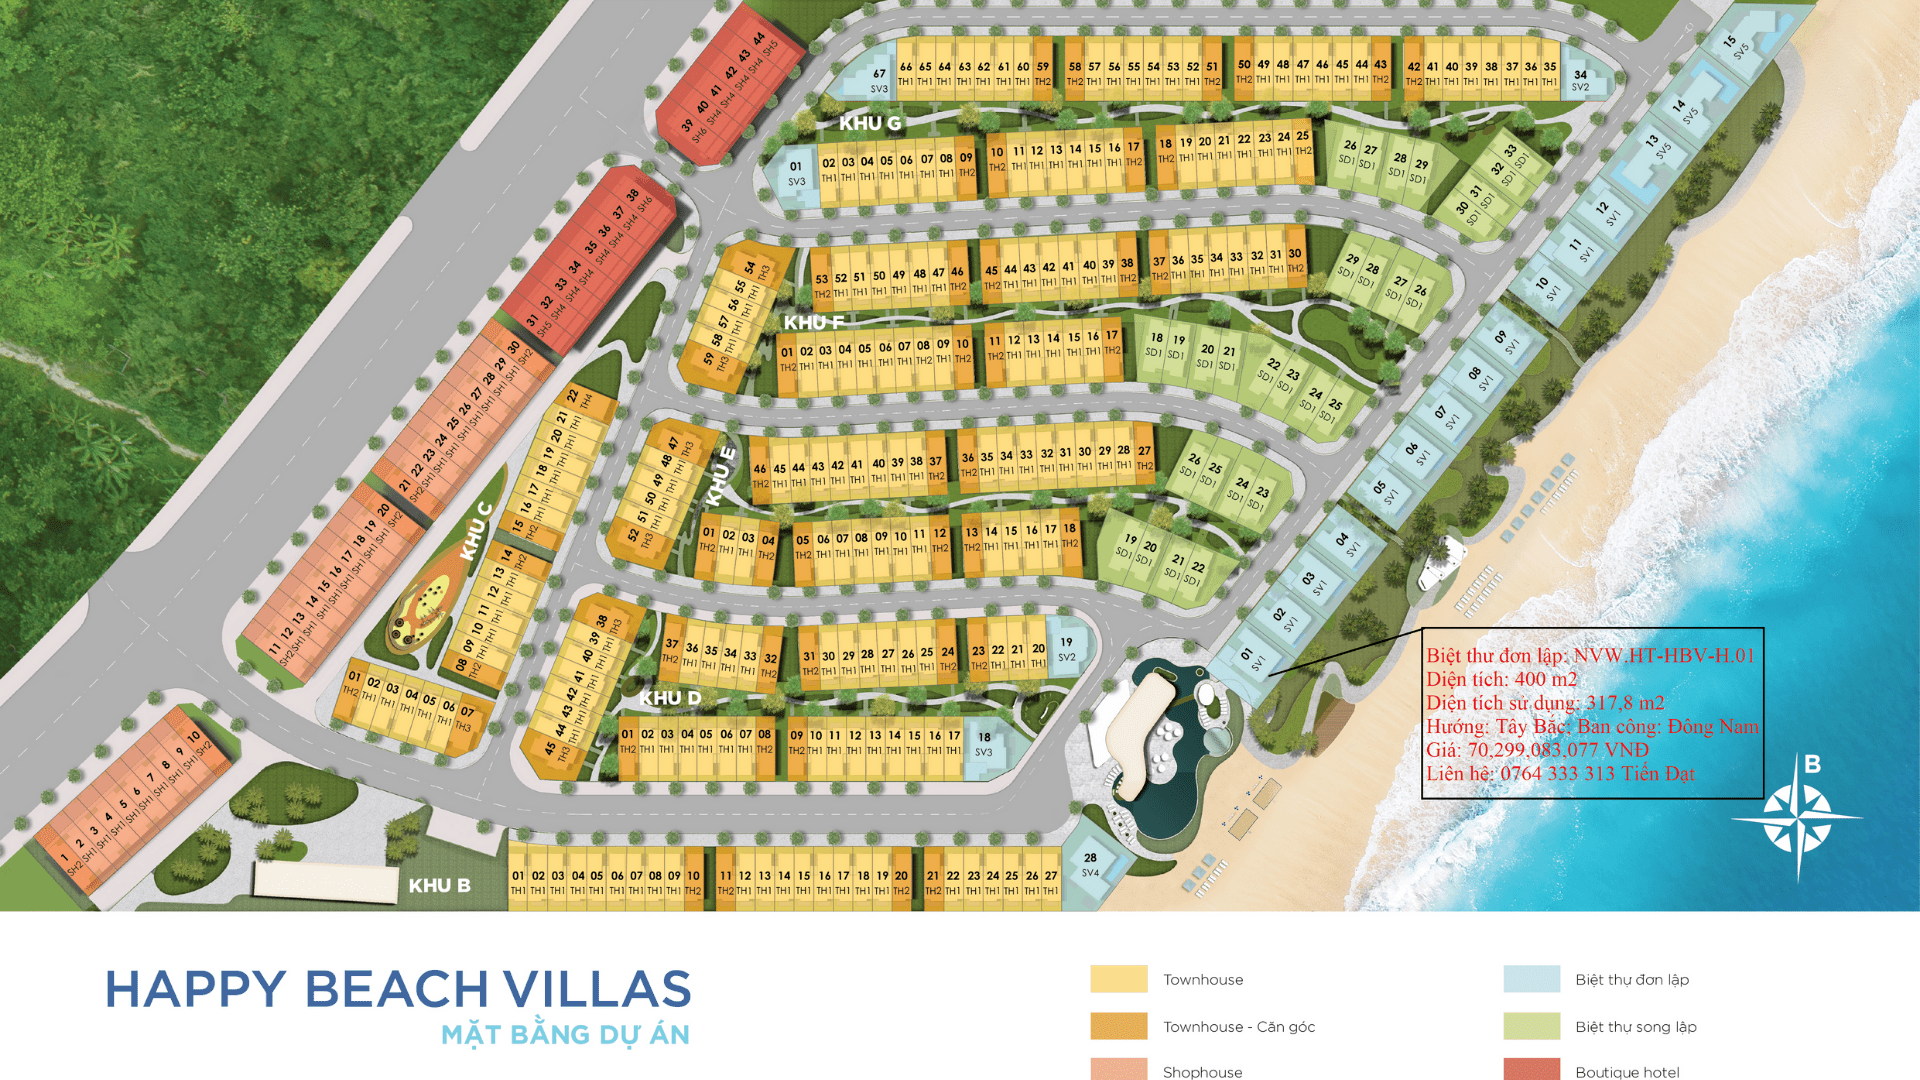 Cần bán Biệt thự dự án Happy Beach Villas Novaworld Hồ Tràm, Diện tích 400m², Giá 70.299 Tỷ - LH: 0764333313 1